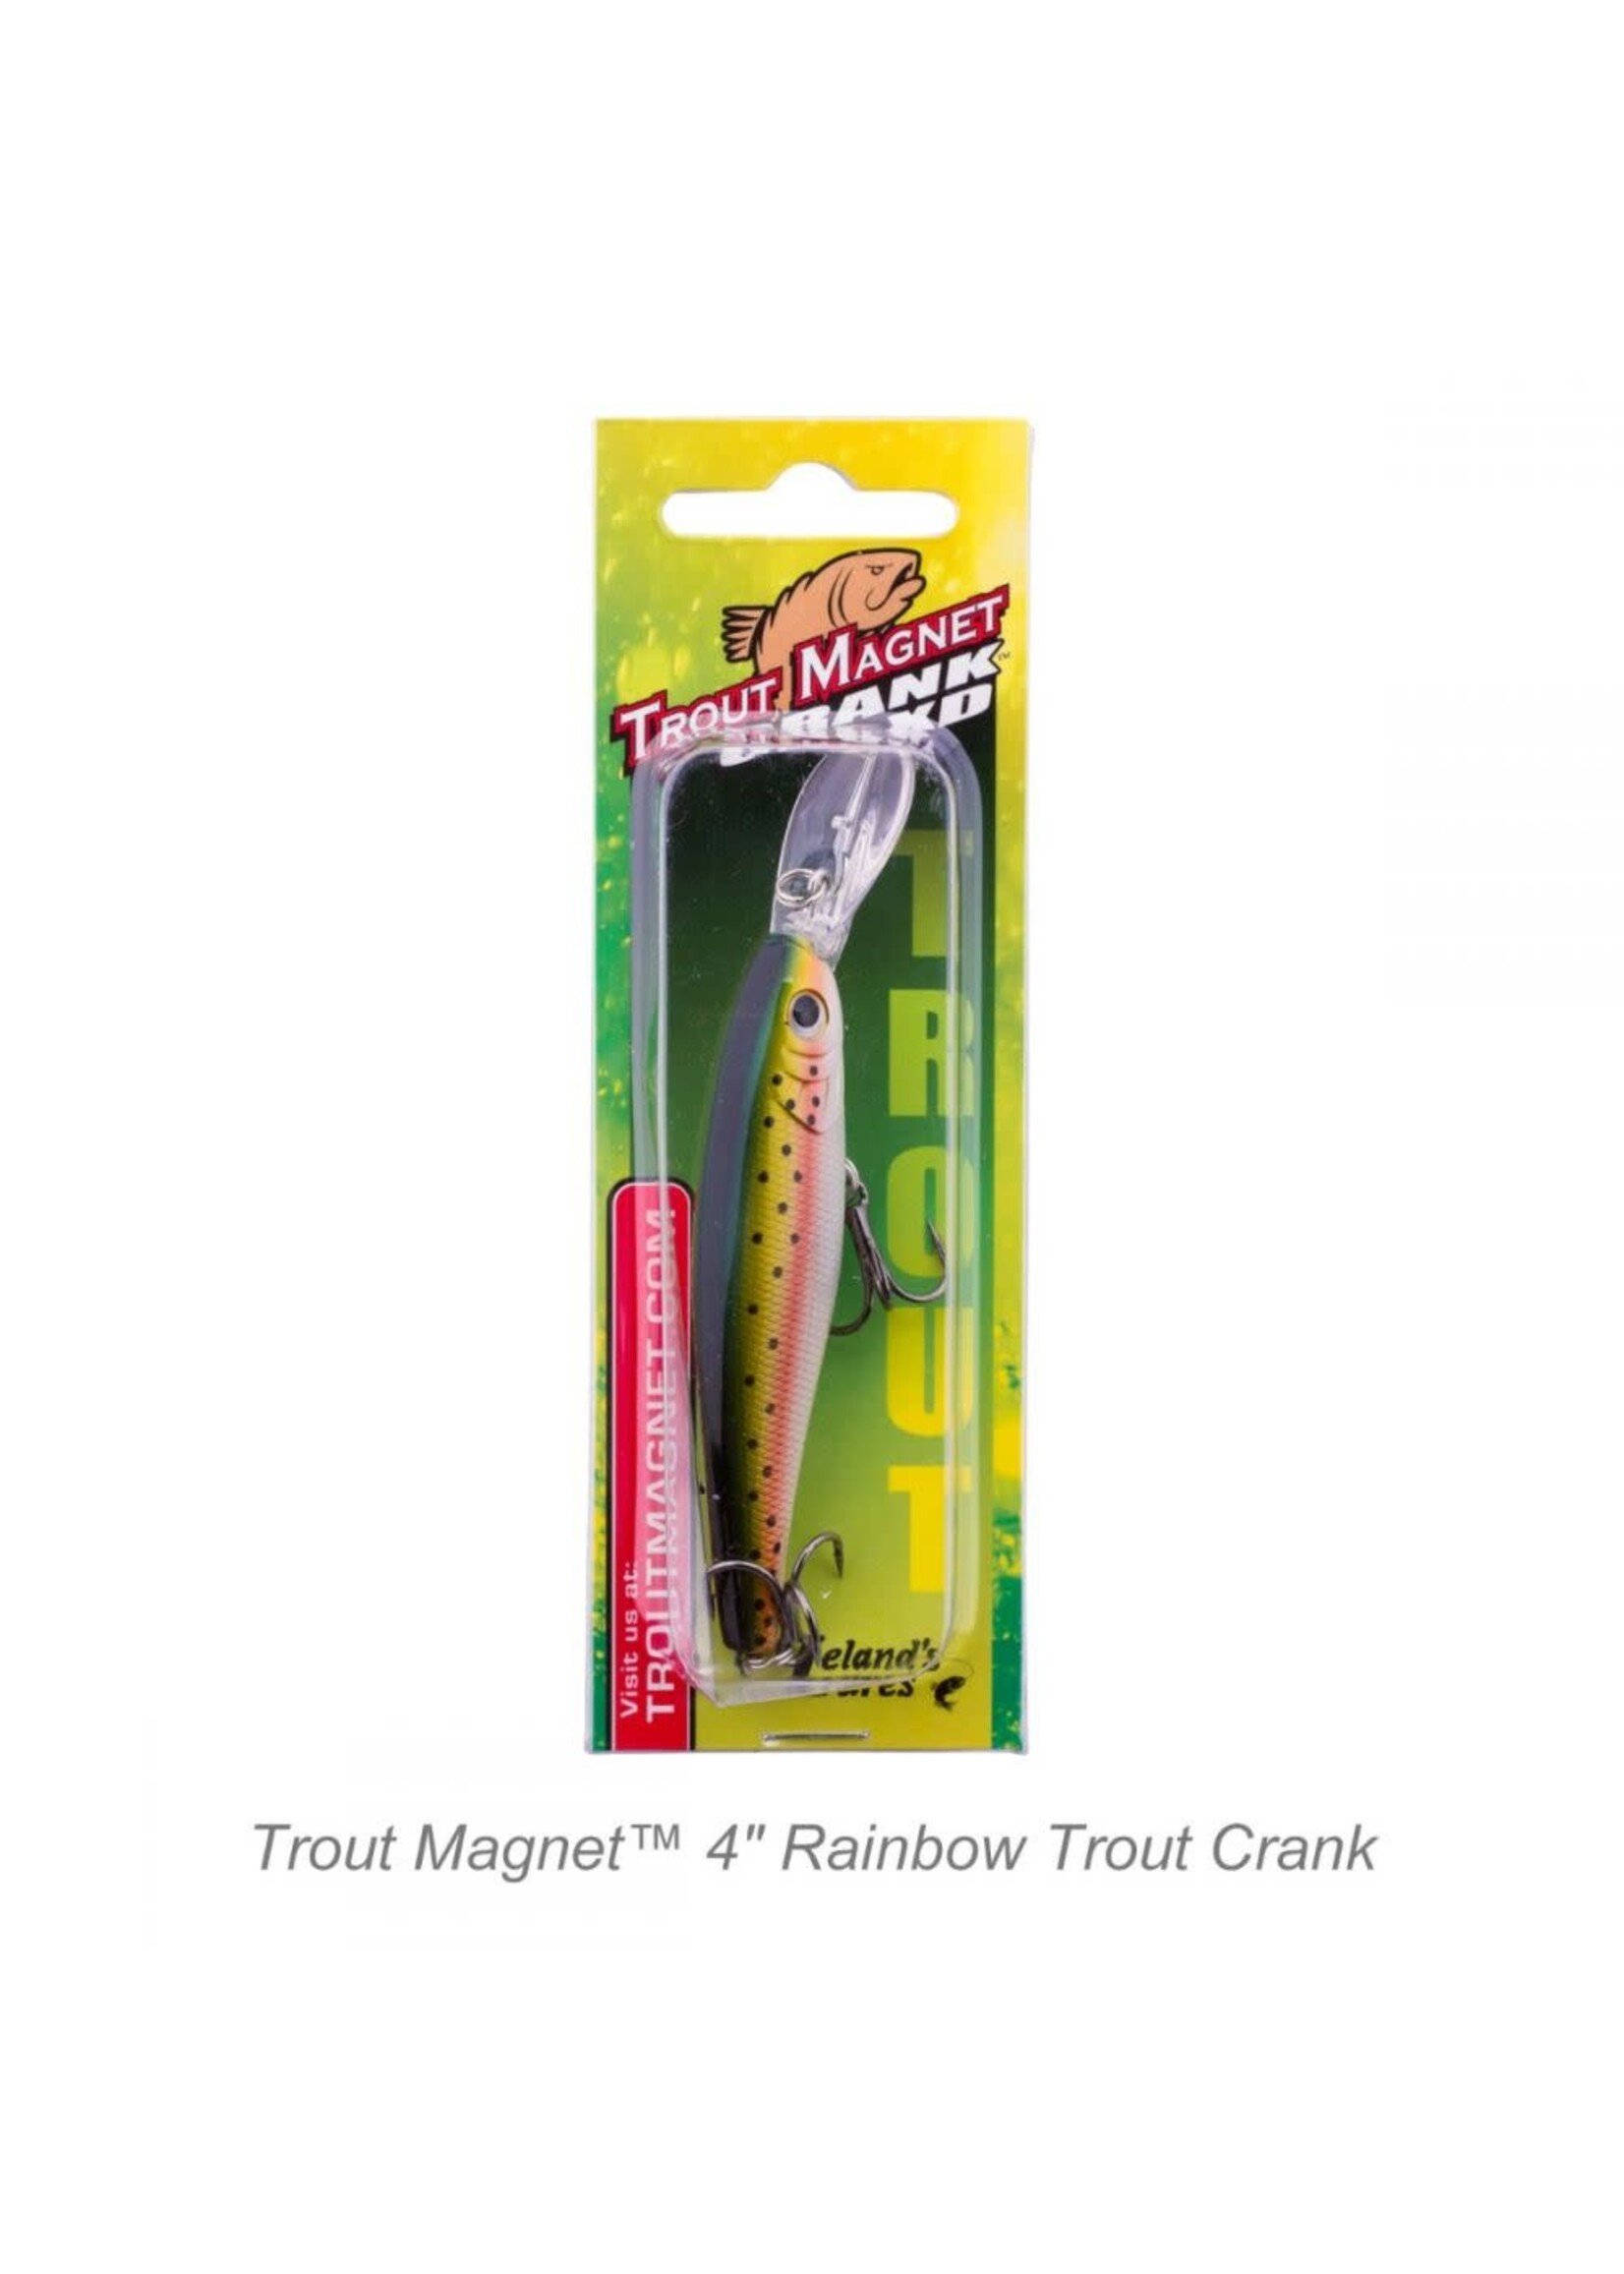 Fishing Trout Magnet - Trout Crank 2.5 Jerkbait Review 